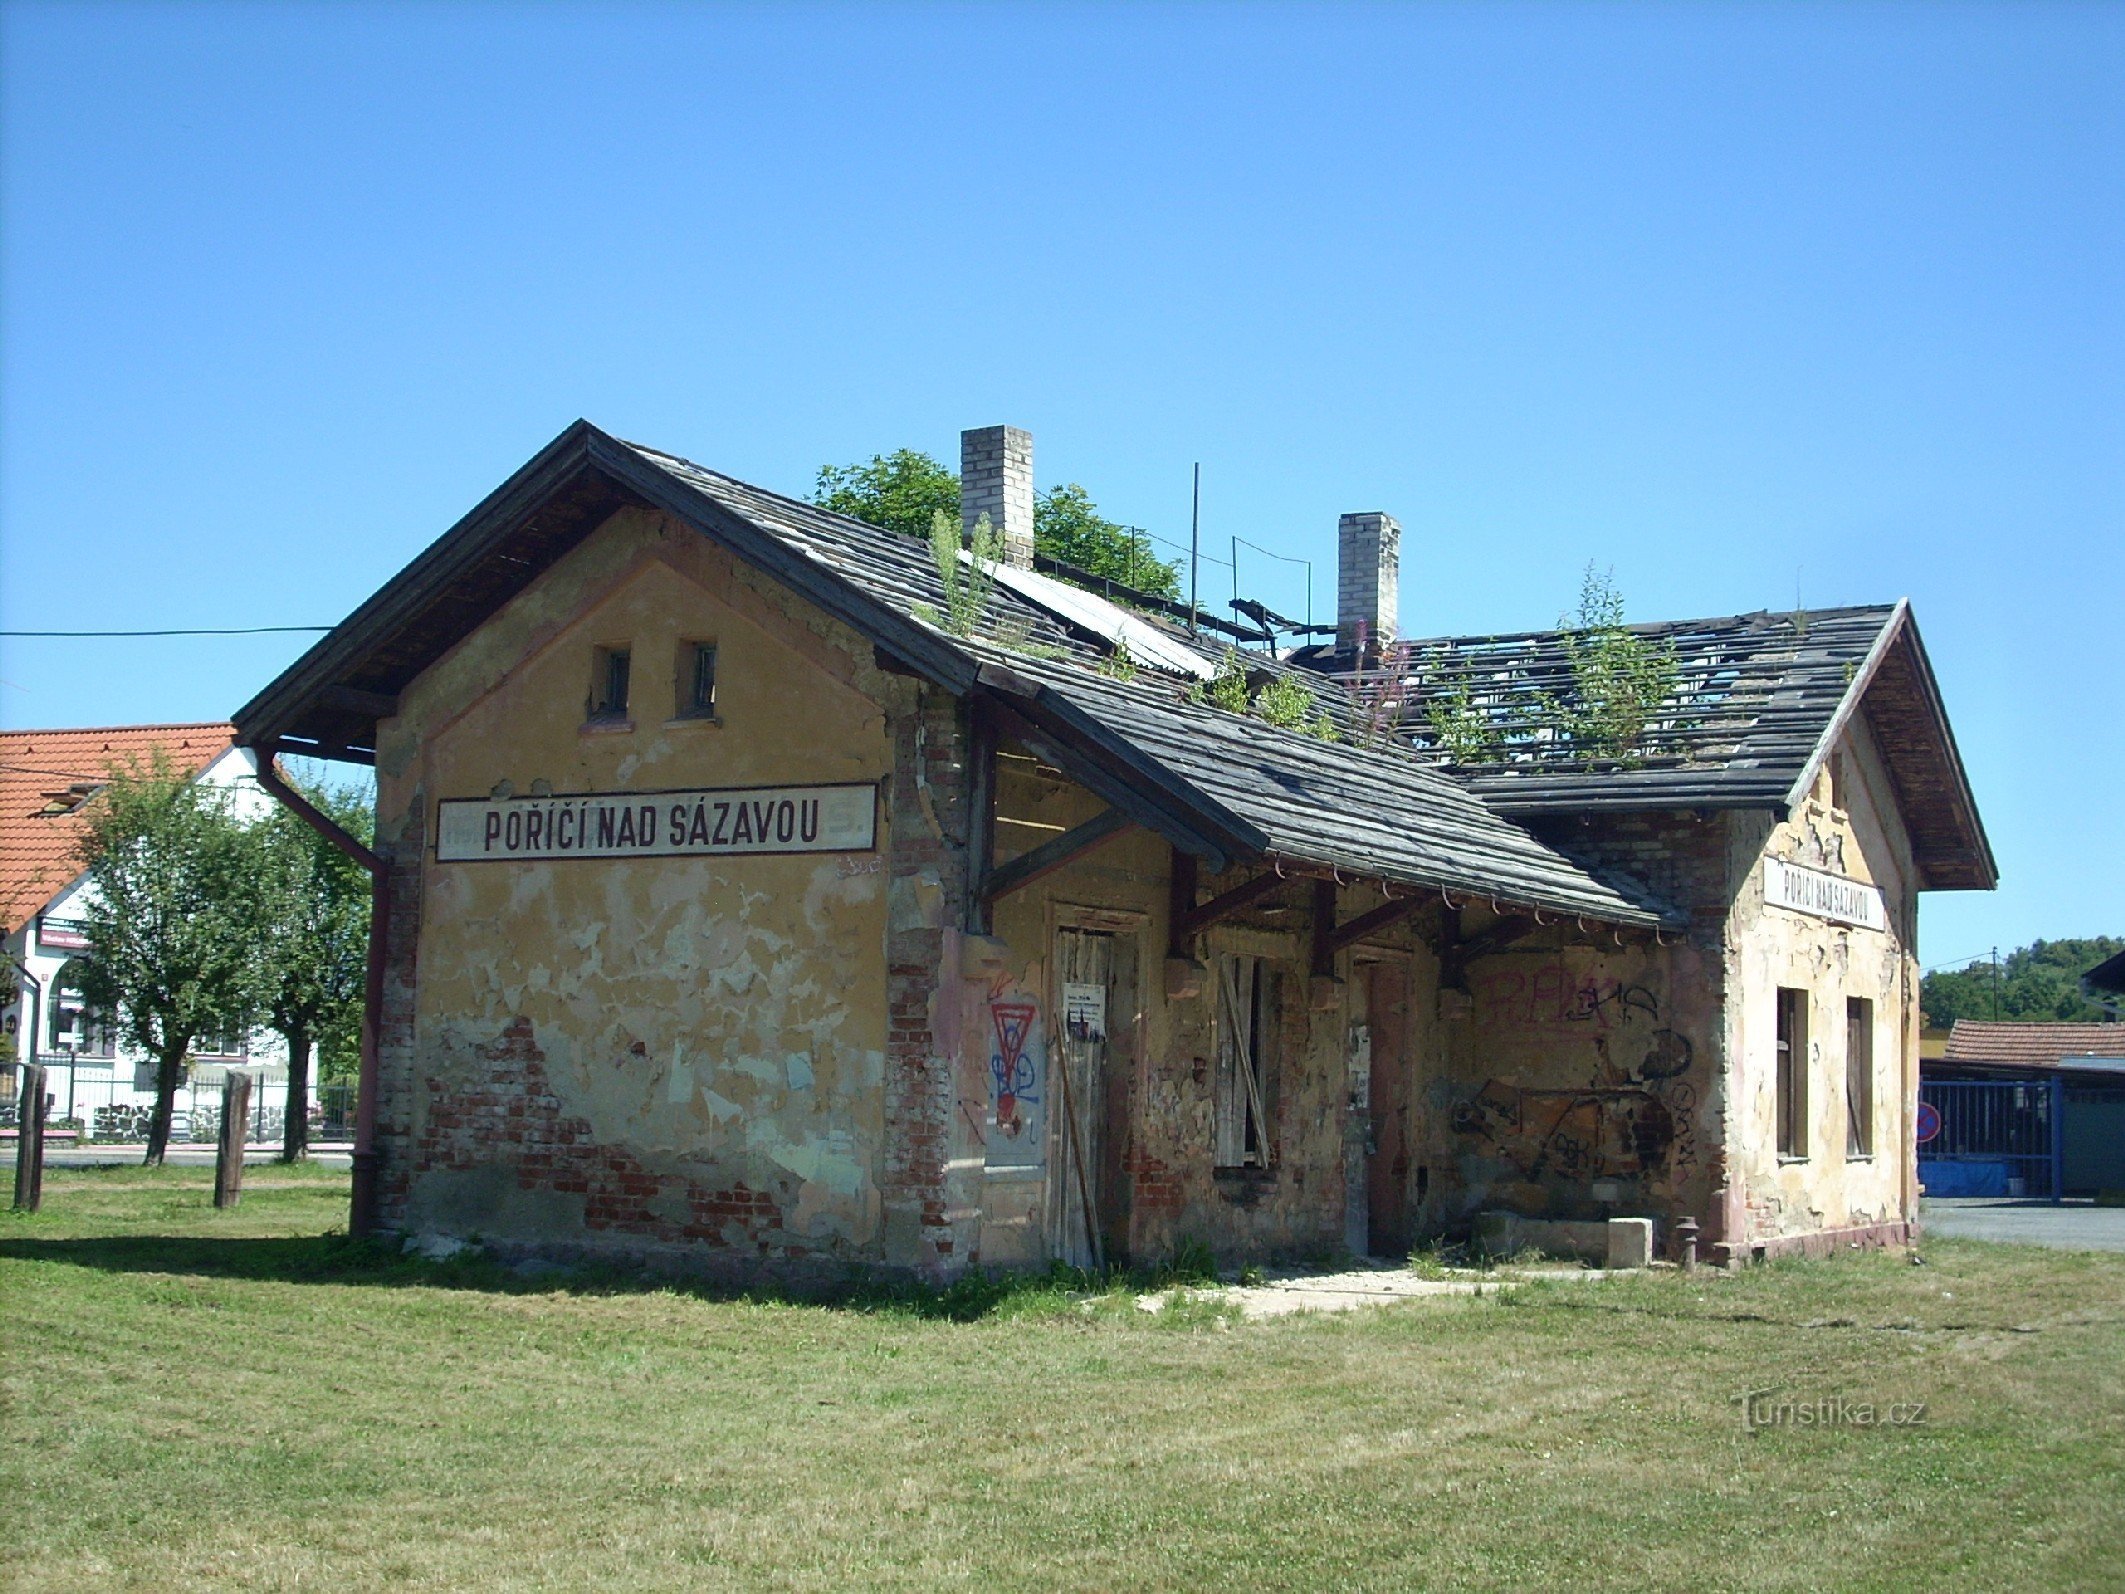 2. Jernbanestationen i Poříčí nad Sázavou - billedet viser, hvordan den lille banegård gradvist forsvinder